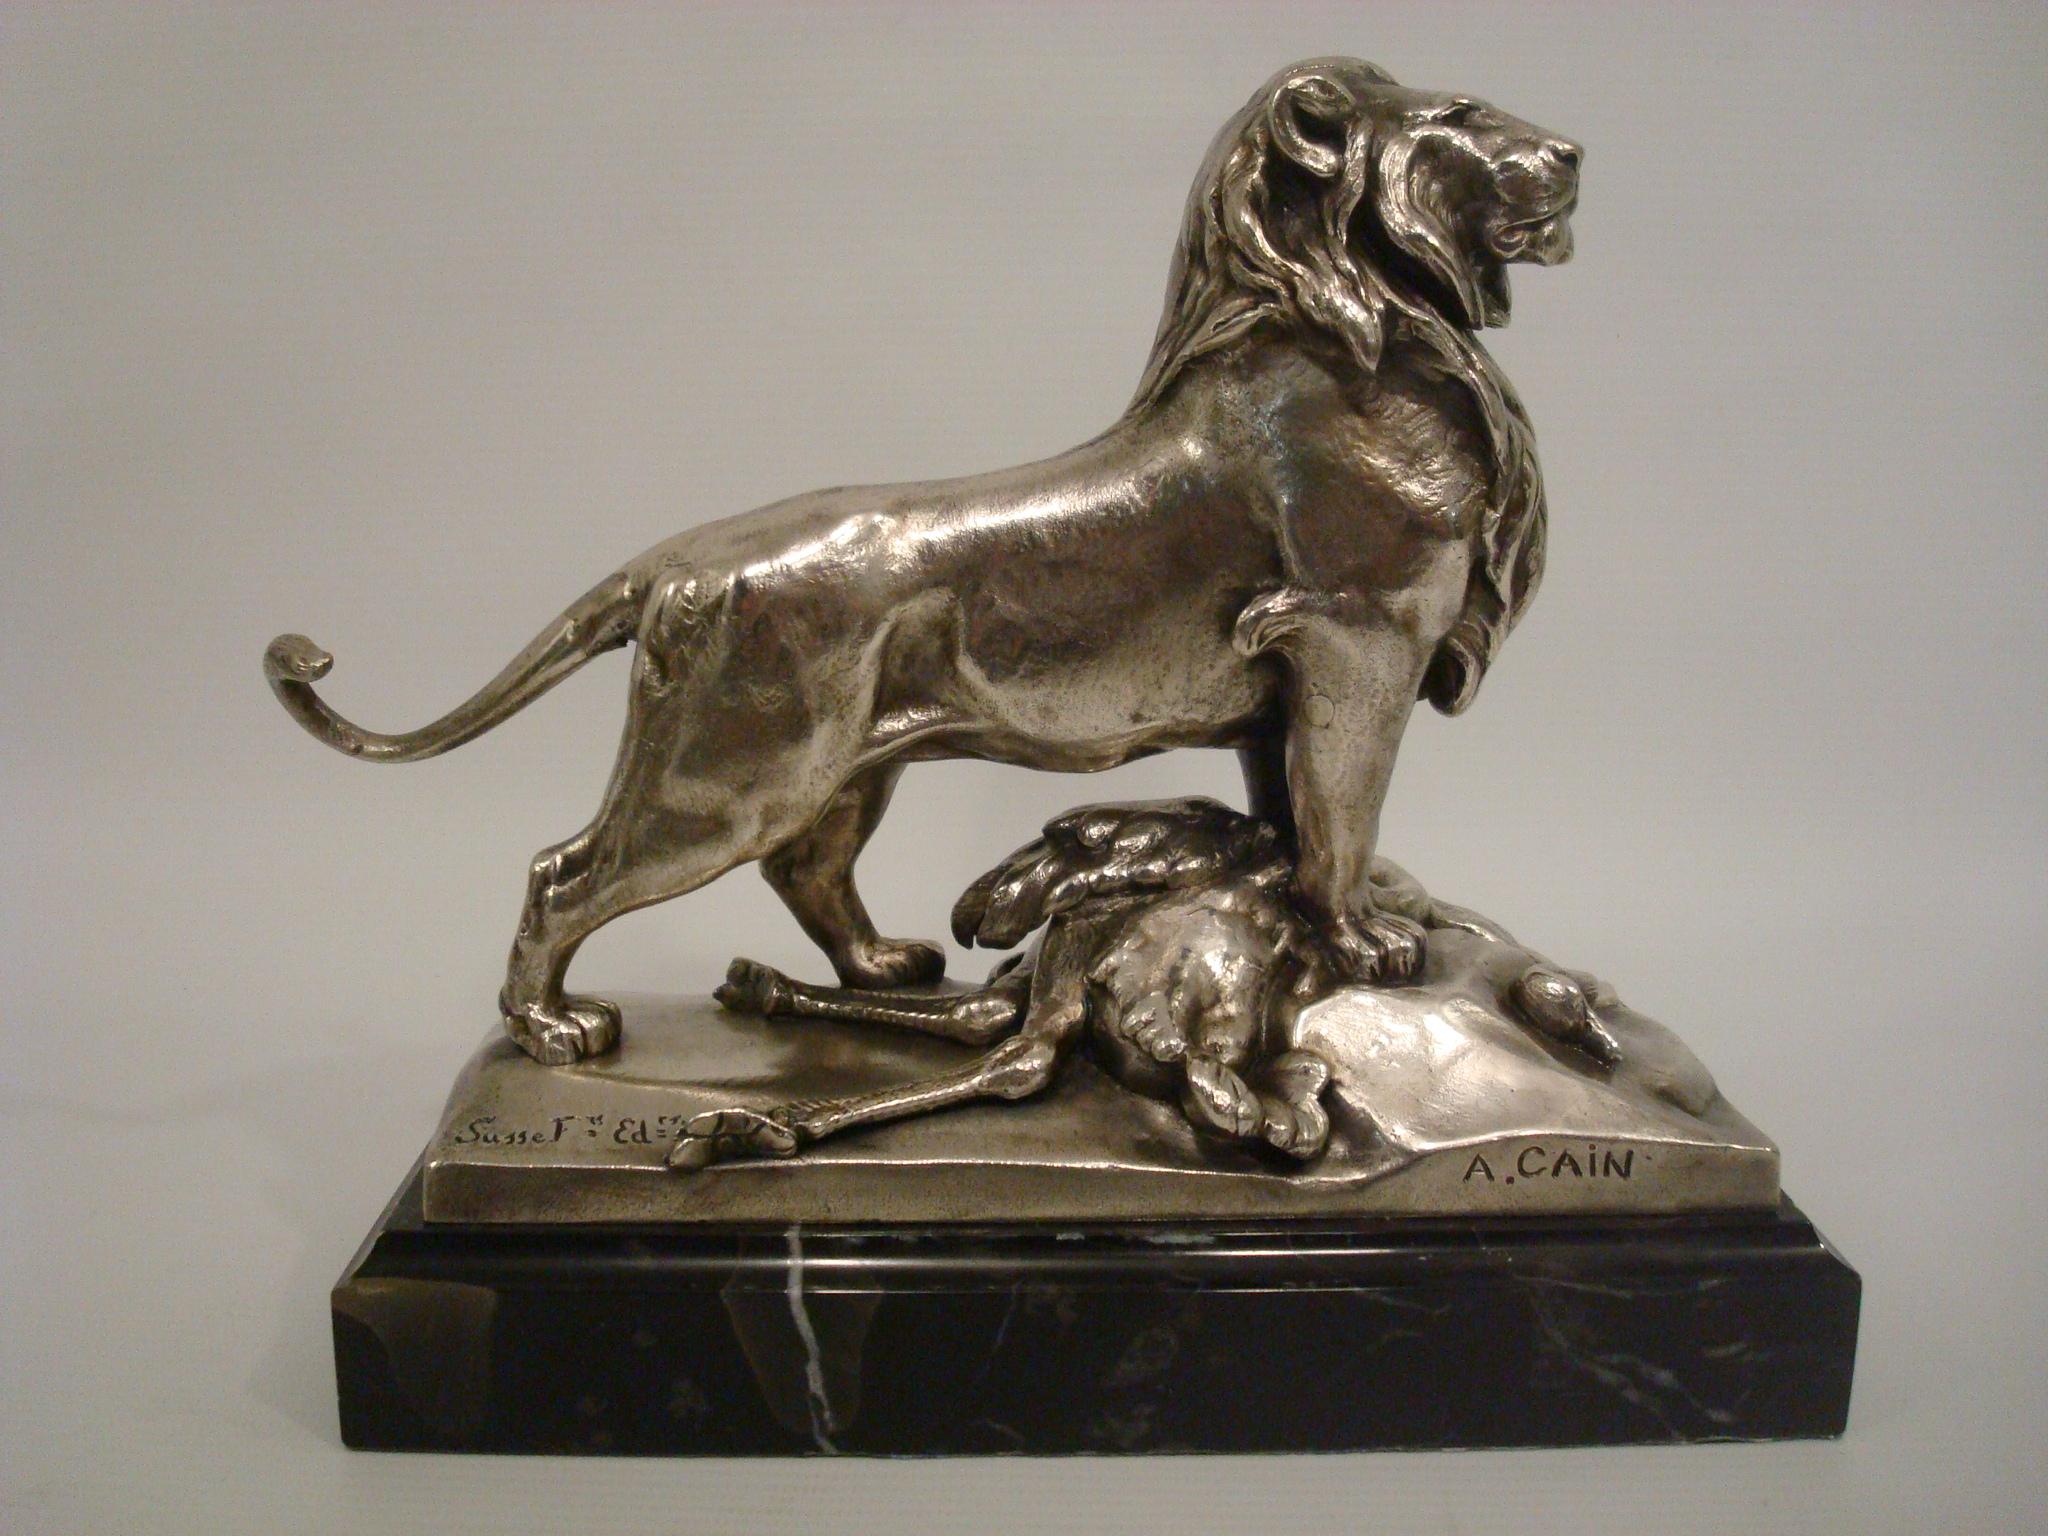 Auguste Cain Lion et autruche en bronze argenté (1822-1894). Ce bronze fin représente un lion mâle se tenant fièrement, son pied avant droit est perché sur un rocher et son pied gauche se tient fermement sur sa prière, une autruche ; il a une